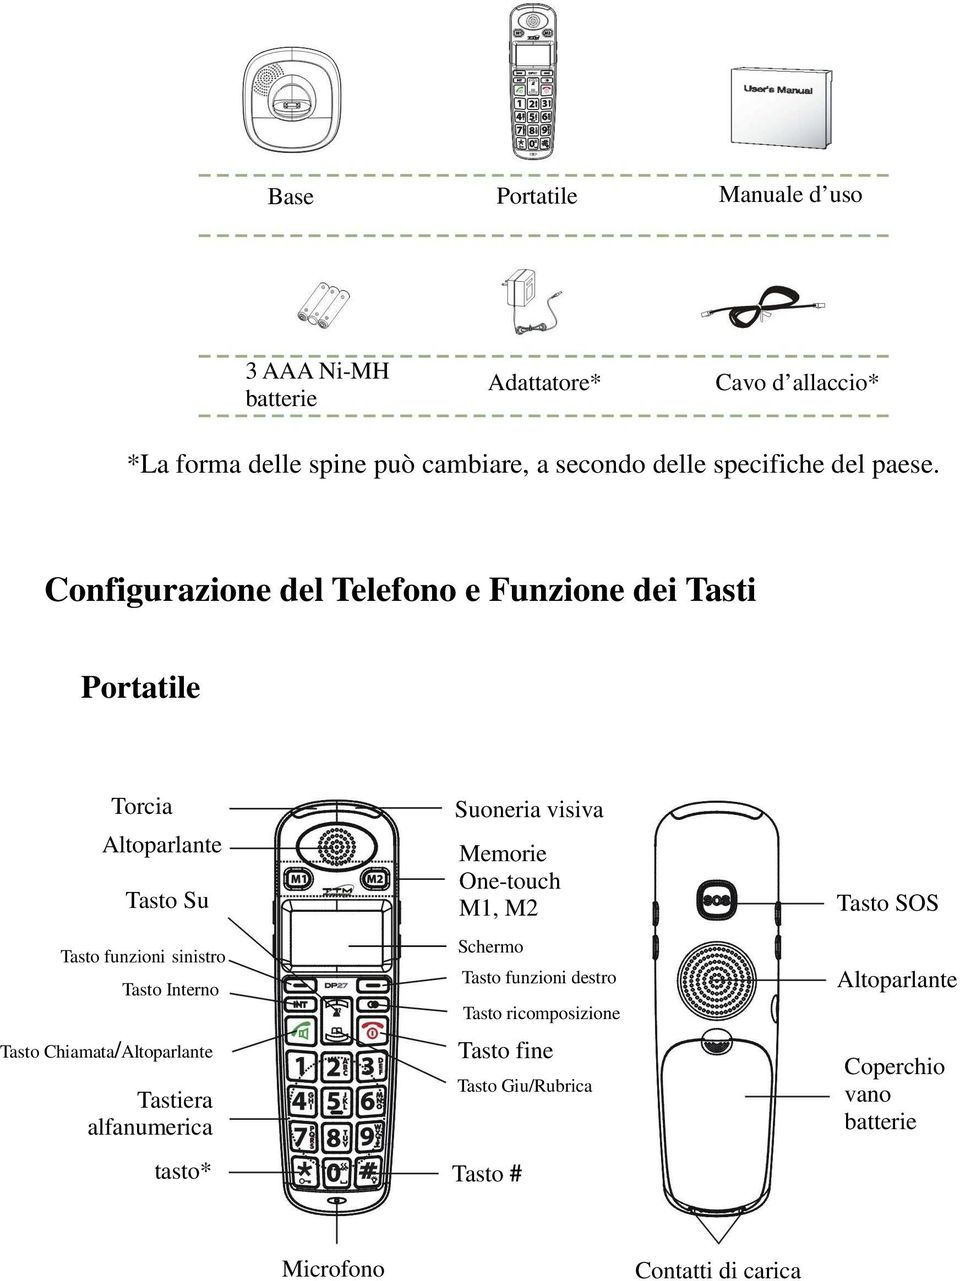 Configurazione del Telefono e Funzione dei Tasti Portatile Torcia Altoparlante Tasto Su Tasto funzioni sinistro Tasto Interno Tasto